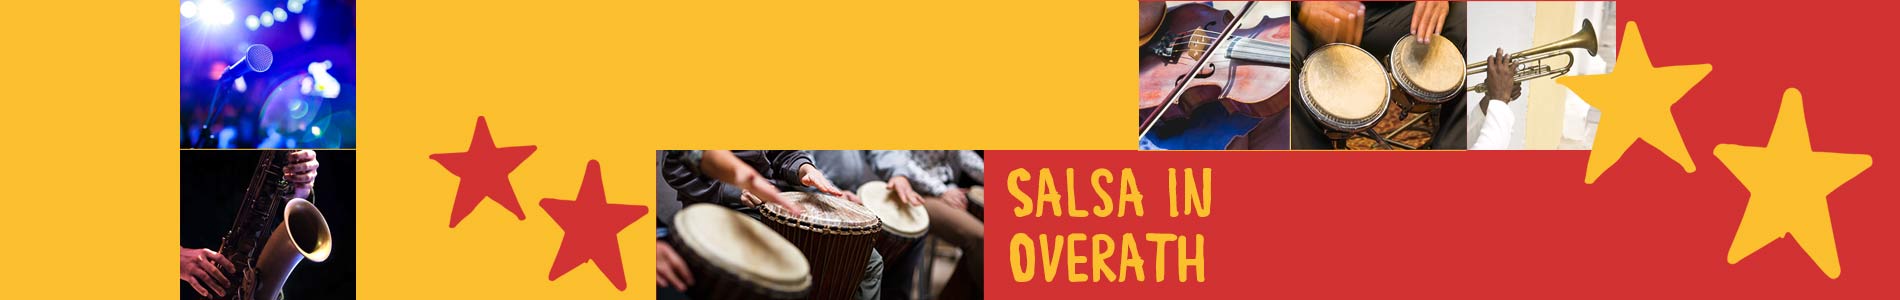 Salsa in Overath – Salsa lernen und tanzen, Tanzkurse, Partys, Veranstaltungen